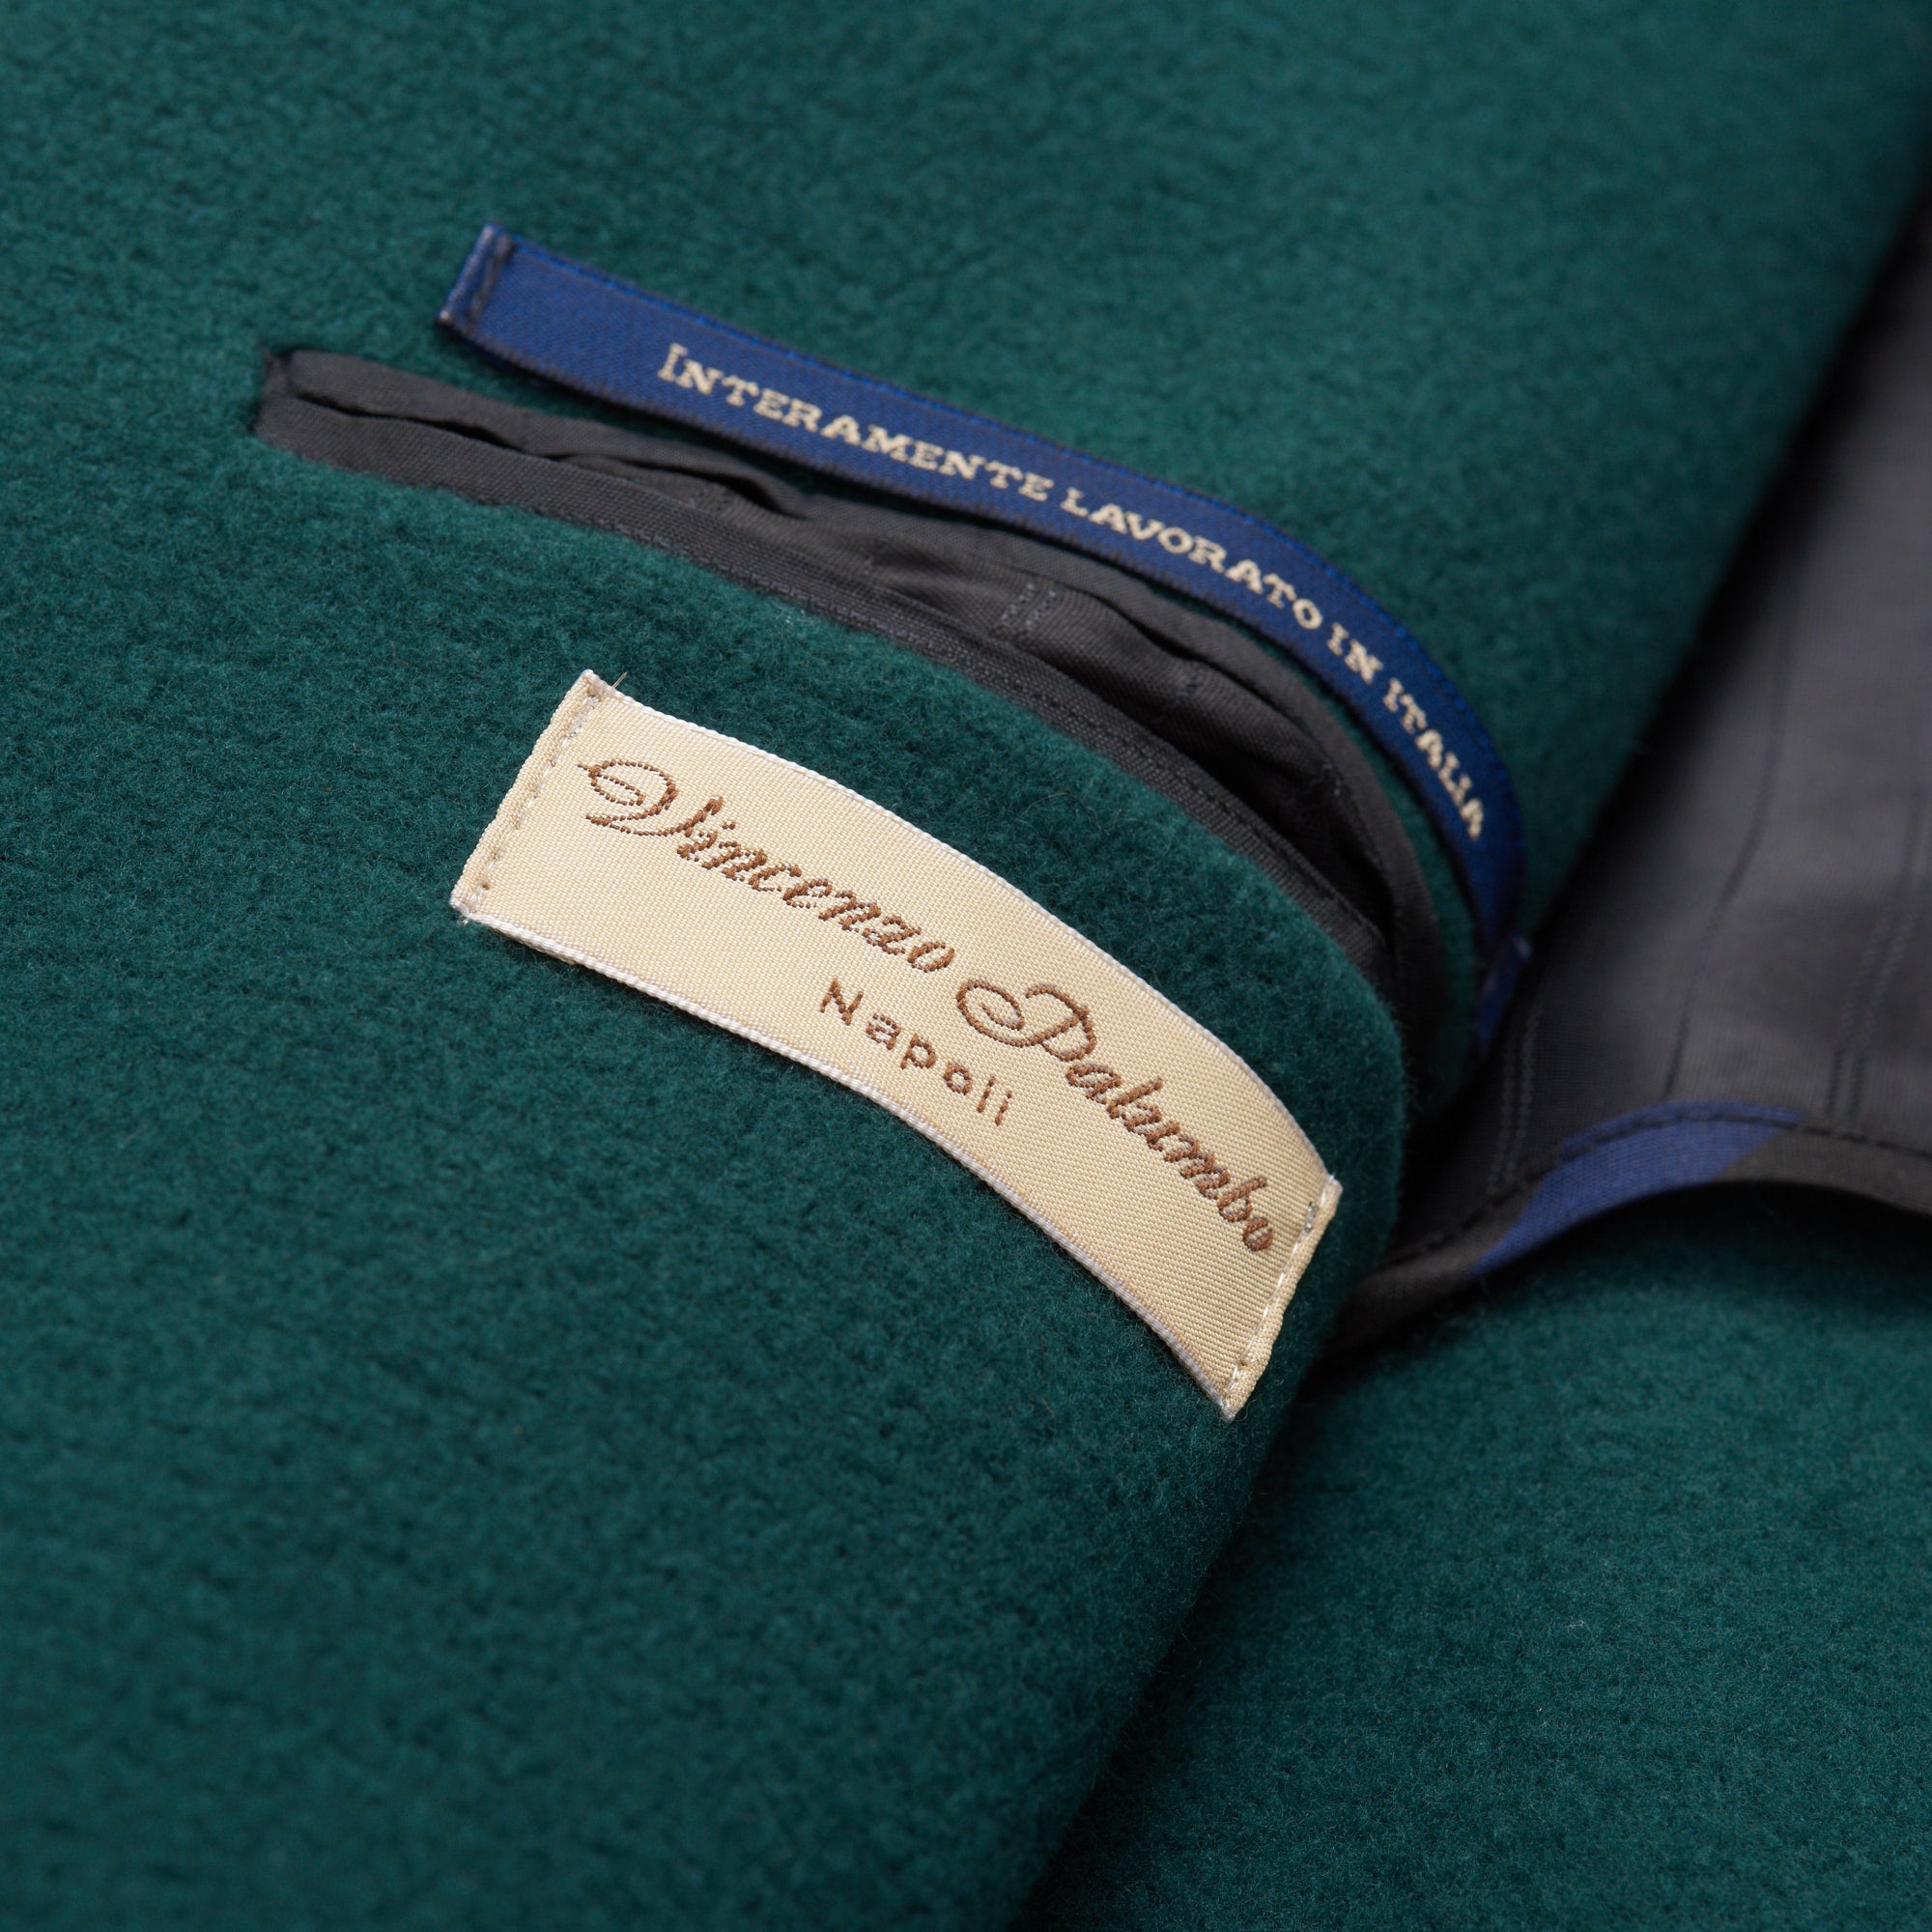 VINCENZO PALUMBO Napoli Green Wool Blend Jacket Coat NEW VINCENZO PALUMBO